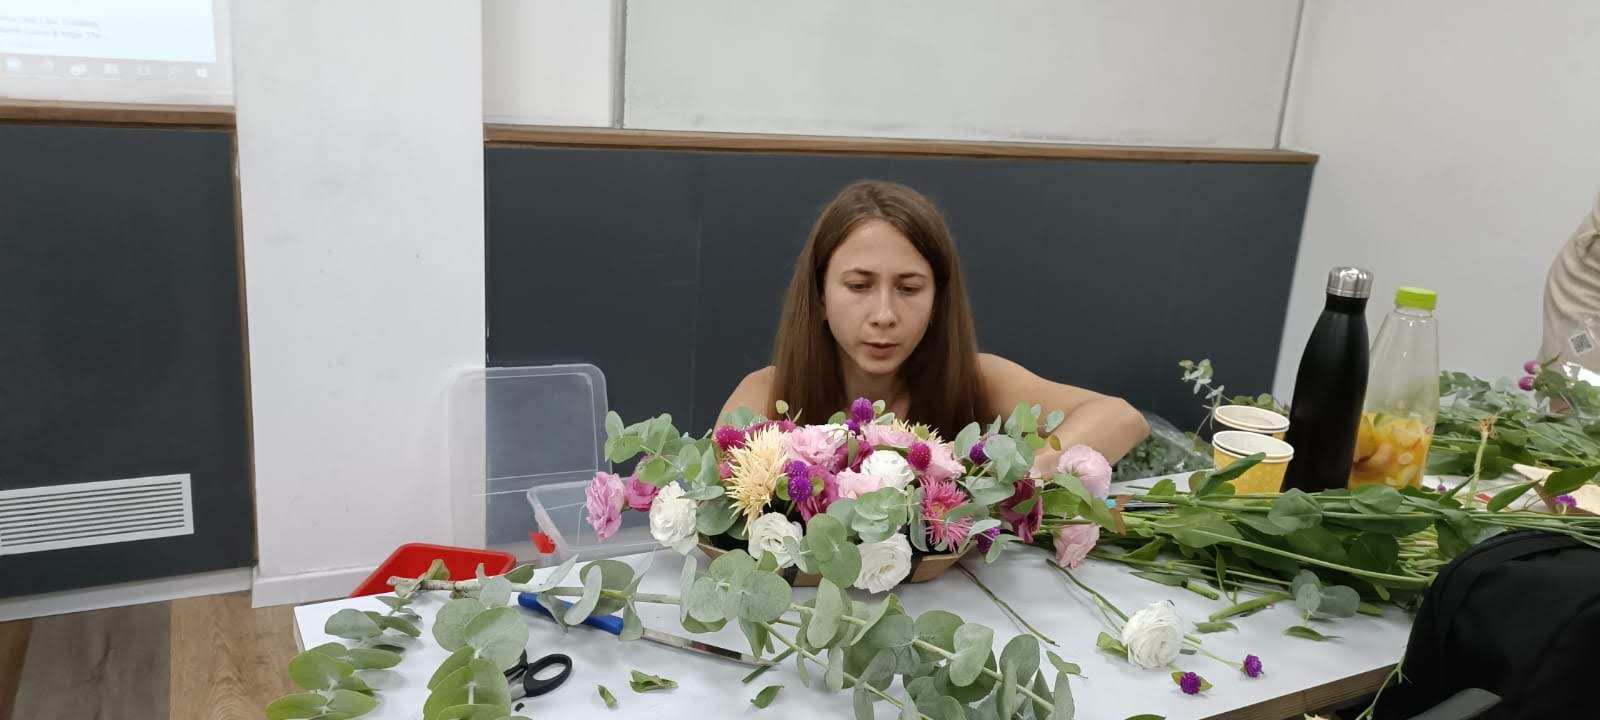 גלרייה - סדנת עיצוב פרחים - קורס ניהול, עיצוב והפקת אירועים מחזור 30 , 28 מתוך 41